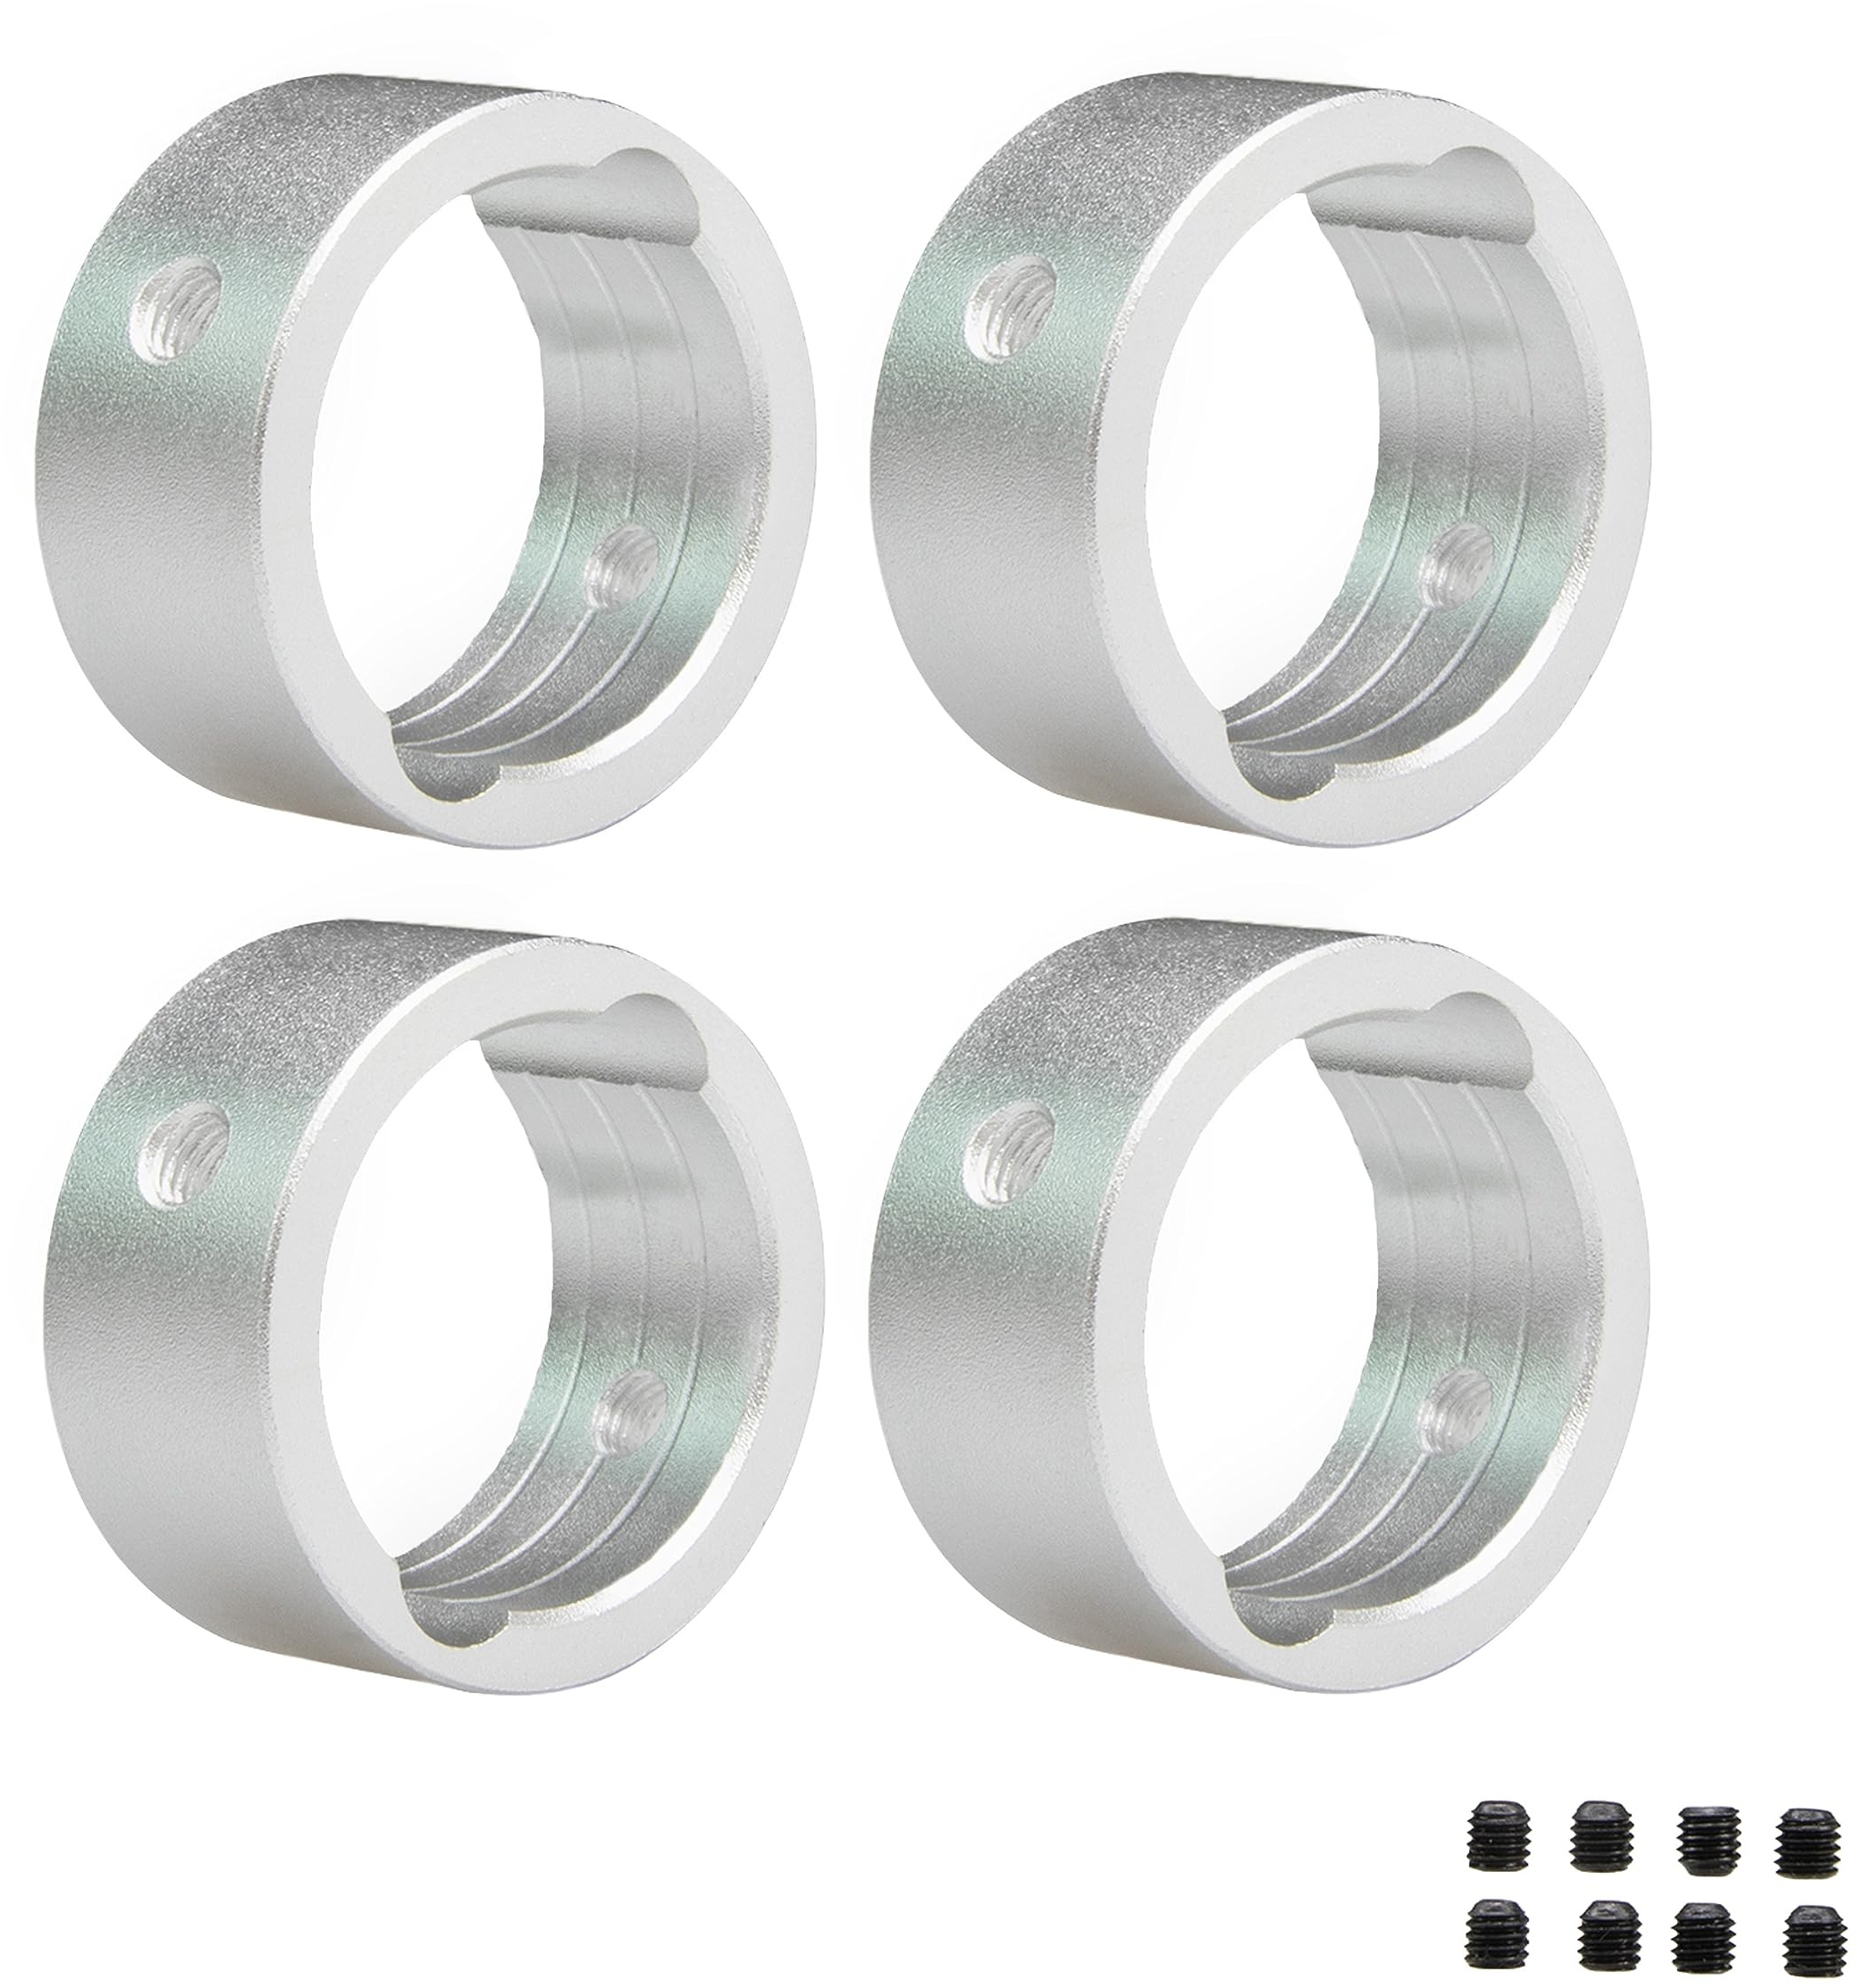 Levigo 4 Stück 17 mm RC Aluminium Gelenkschale Verstärkter Ring Kompatibel mit TRAXXAS 1/6 4WD XRT 8S-78086-4, RC Upgrade Teile Drive Cup Sleeves Protect Ring, Silber